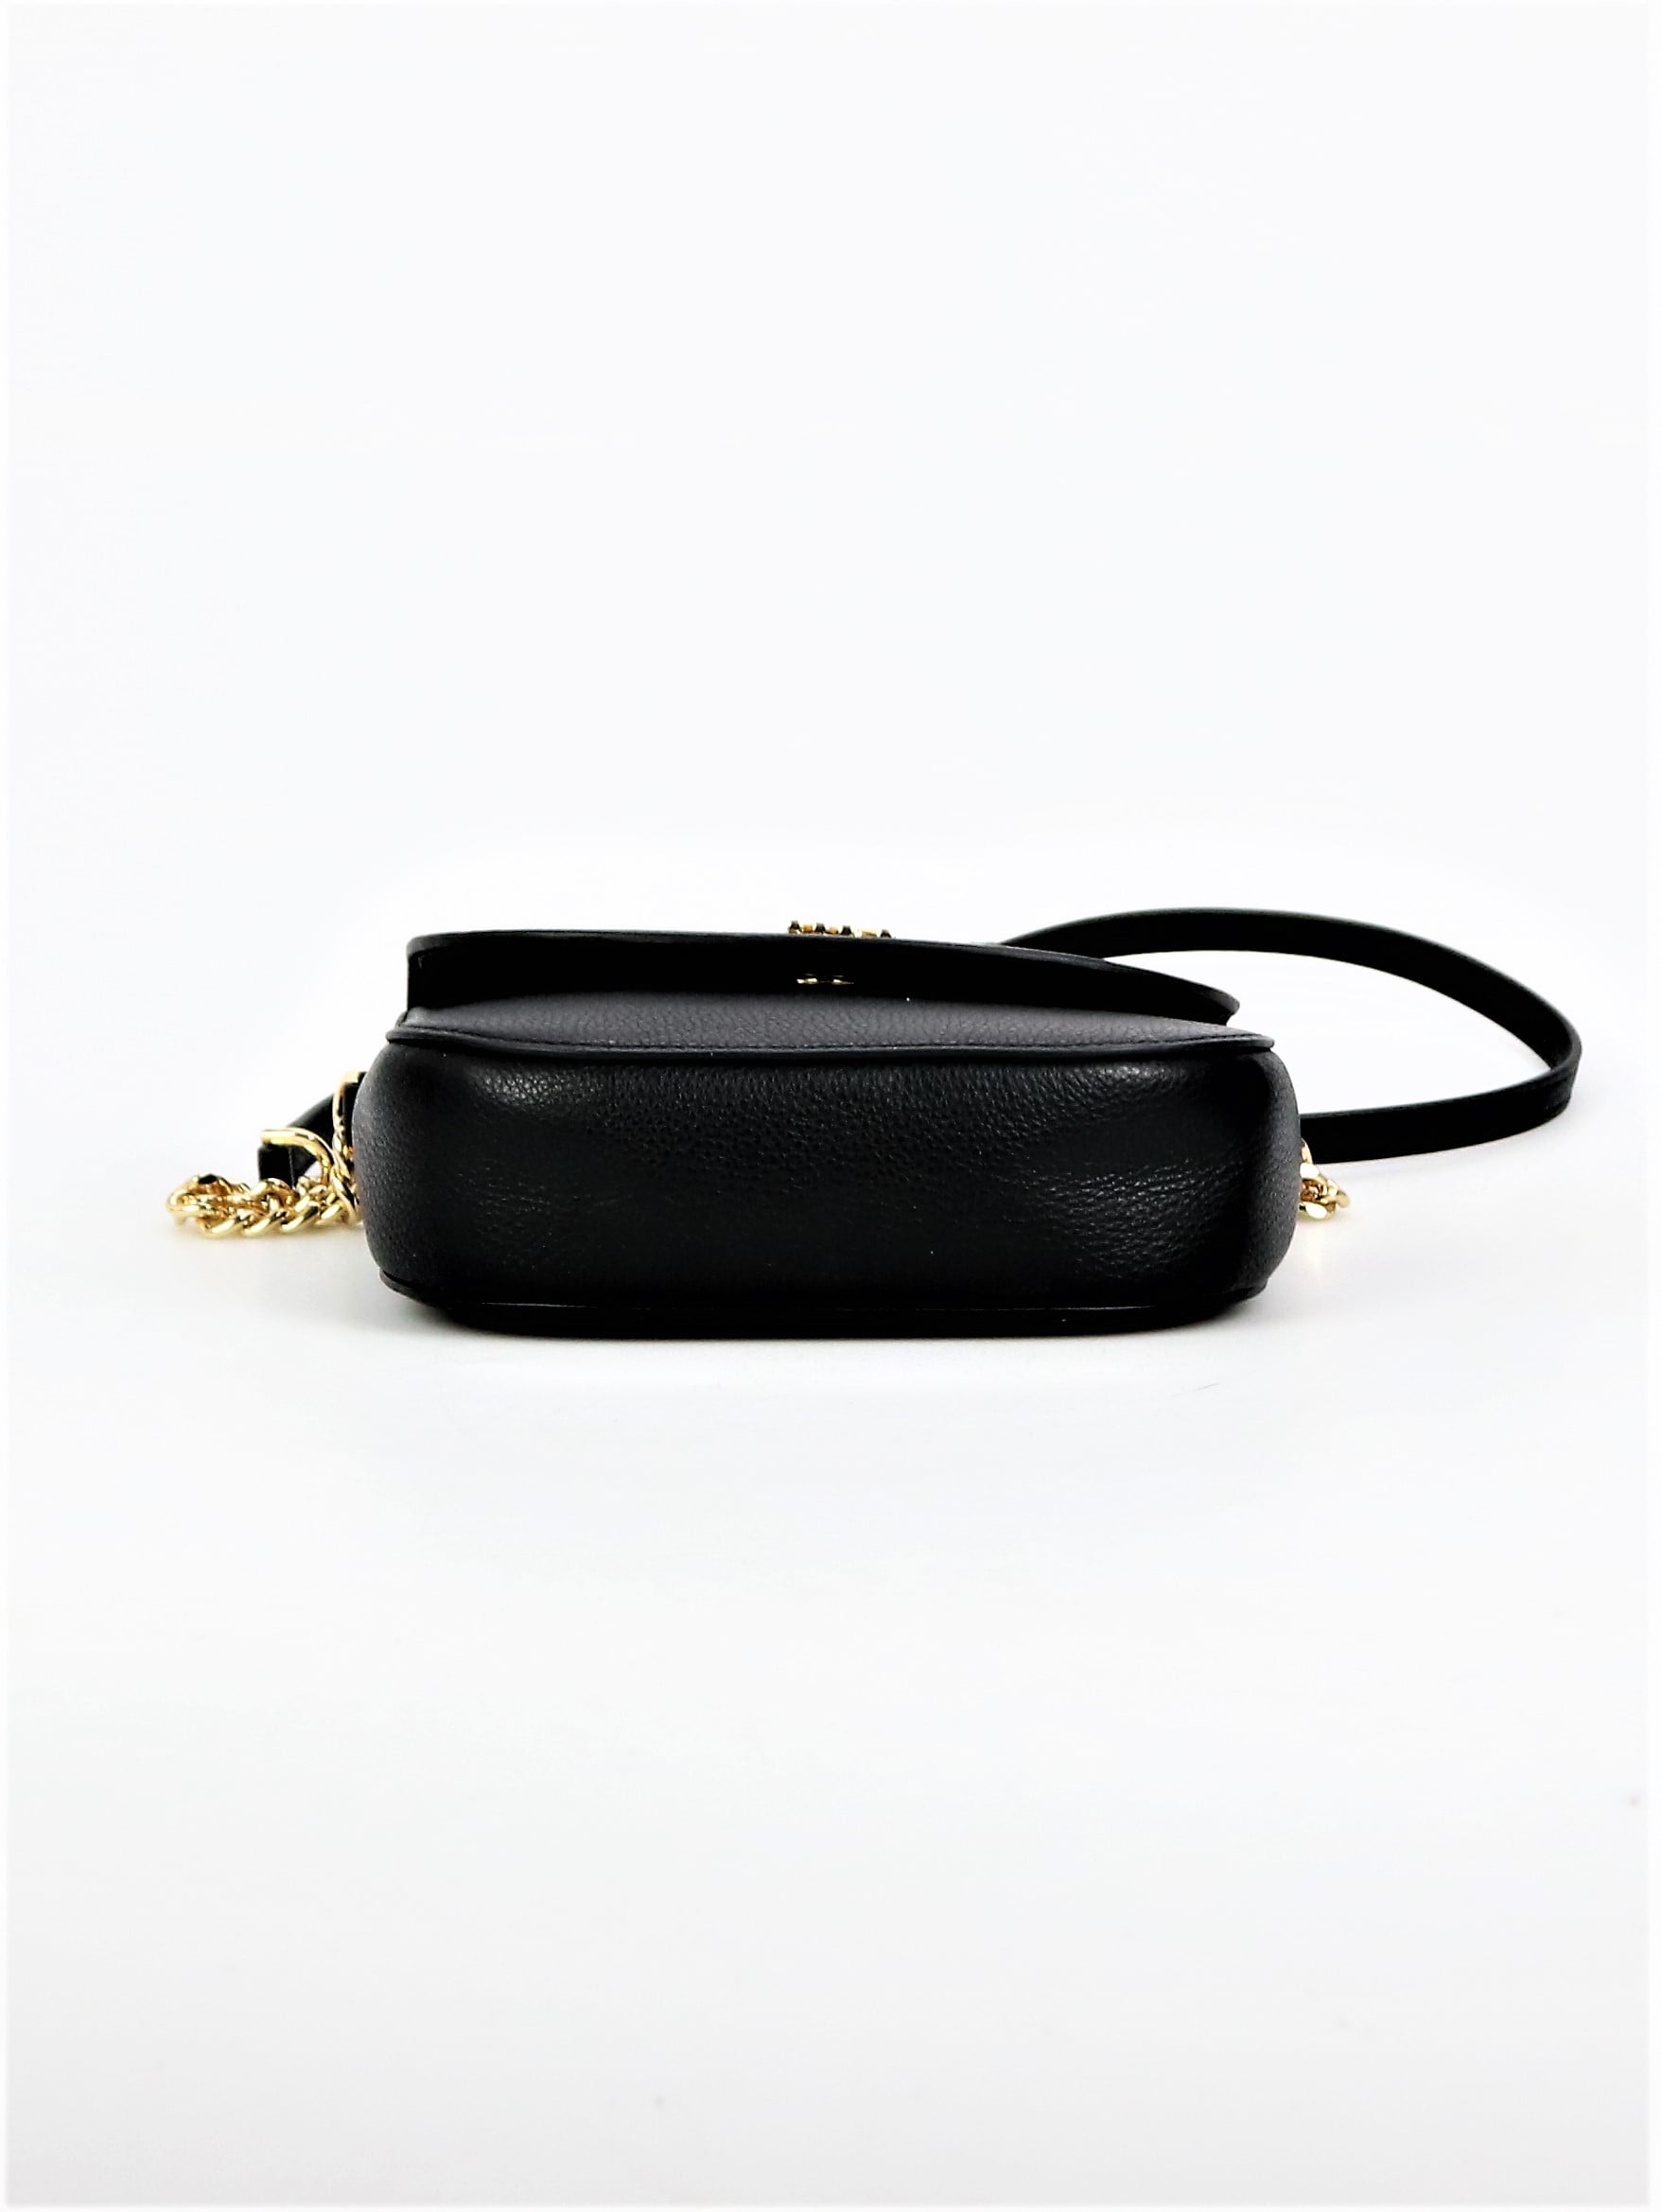 Michael Kors Black Mott Leather Shoulder Bag Size One Size - $159